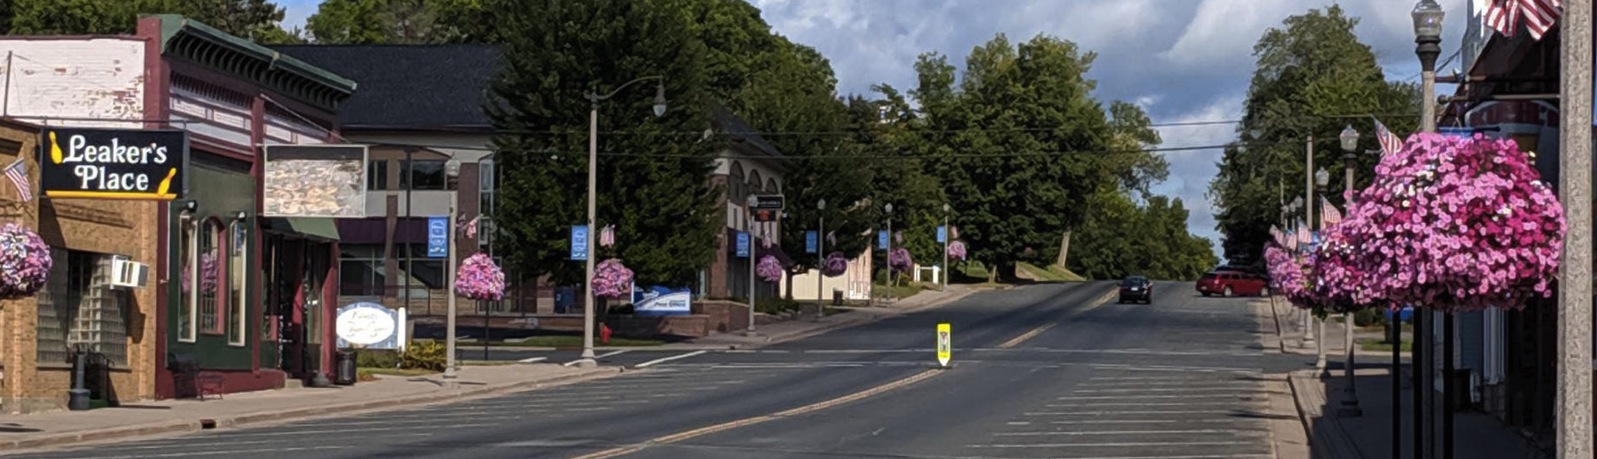 image of Main Street, Glenwood City